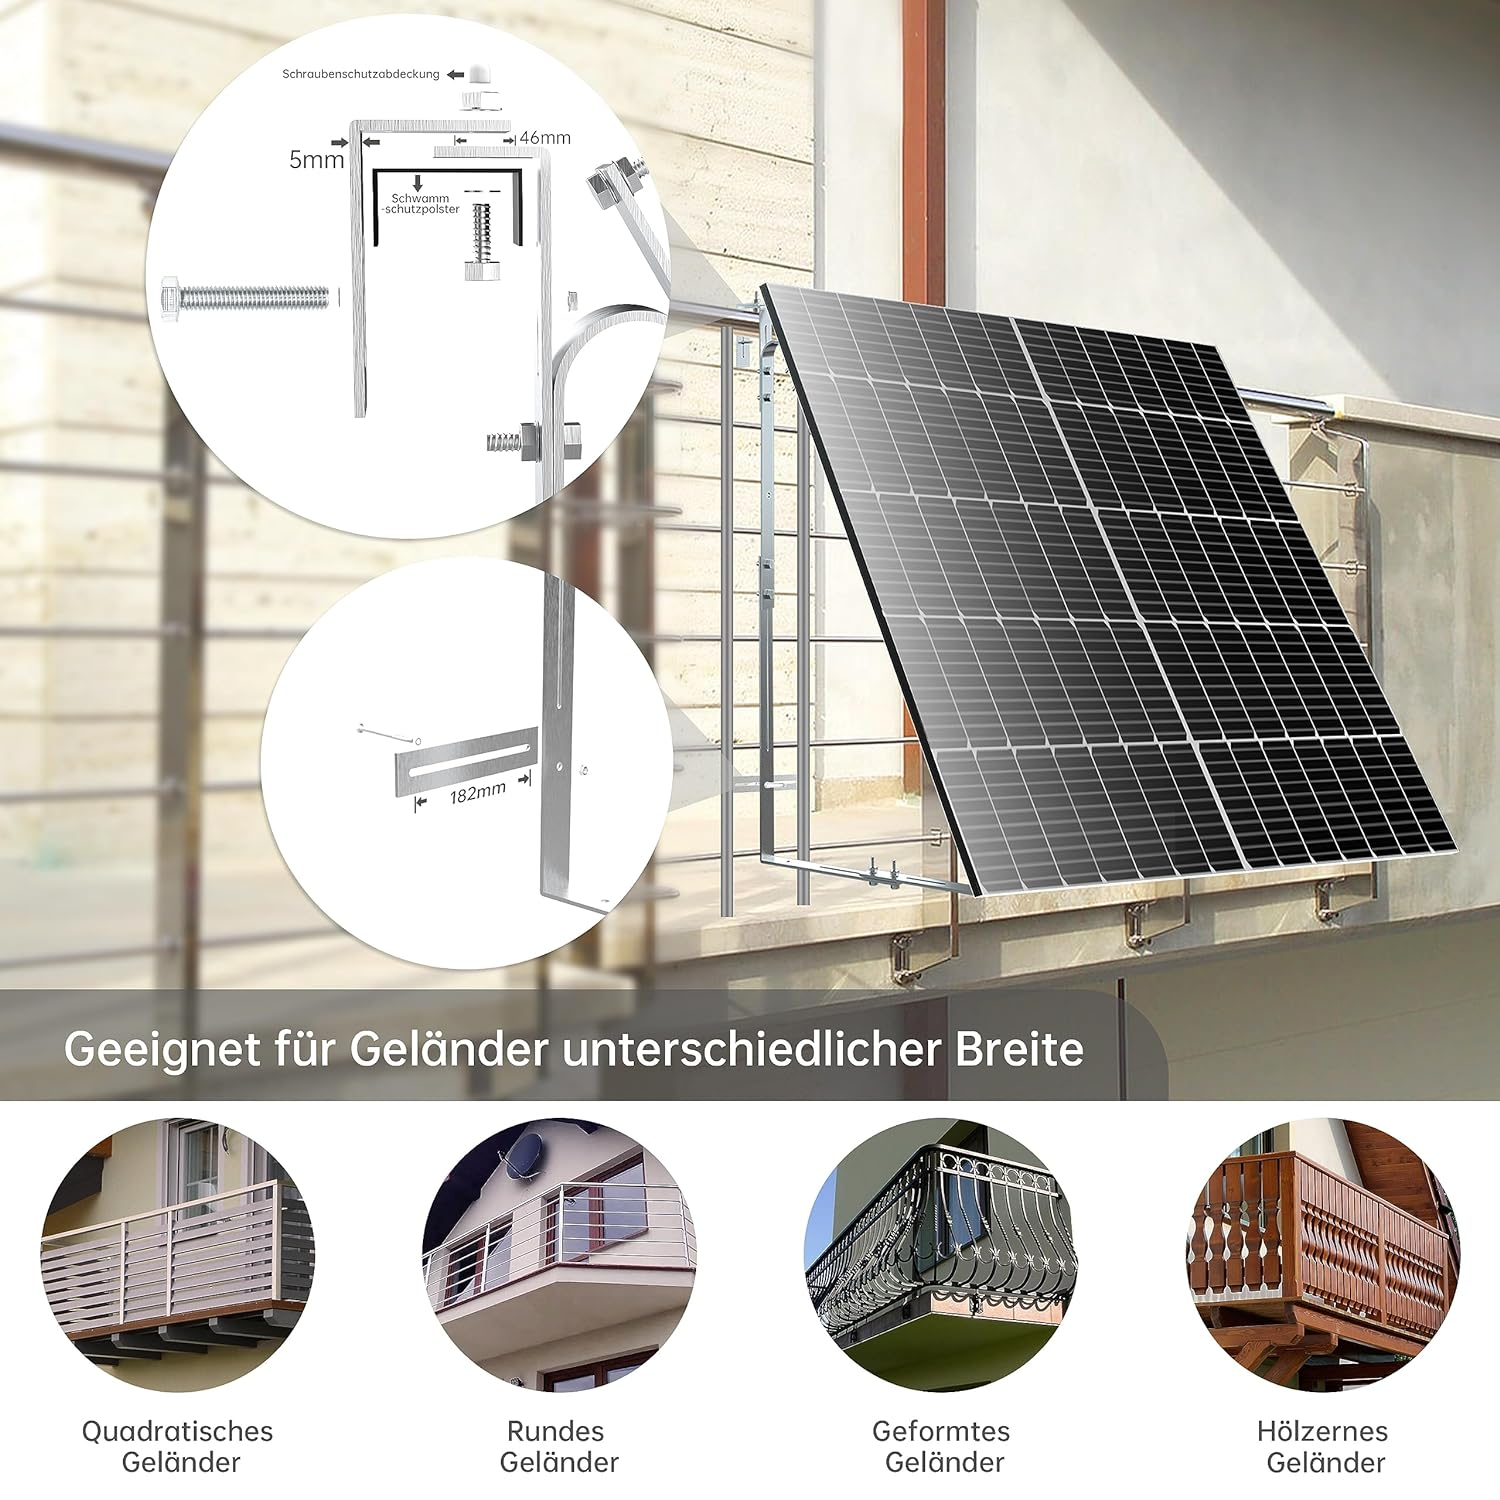 Balkon für LEICKE Aluminium alle solar-Halterung, von Halter cm Solarpanel Halterung 92-120 Solarmodulbreiten